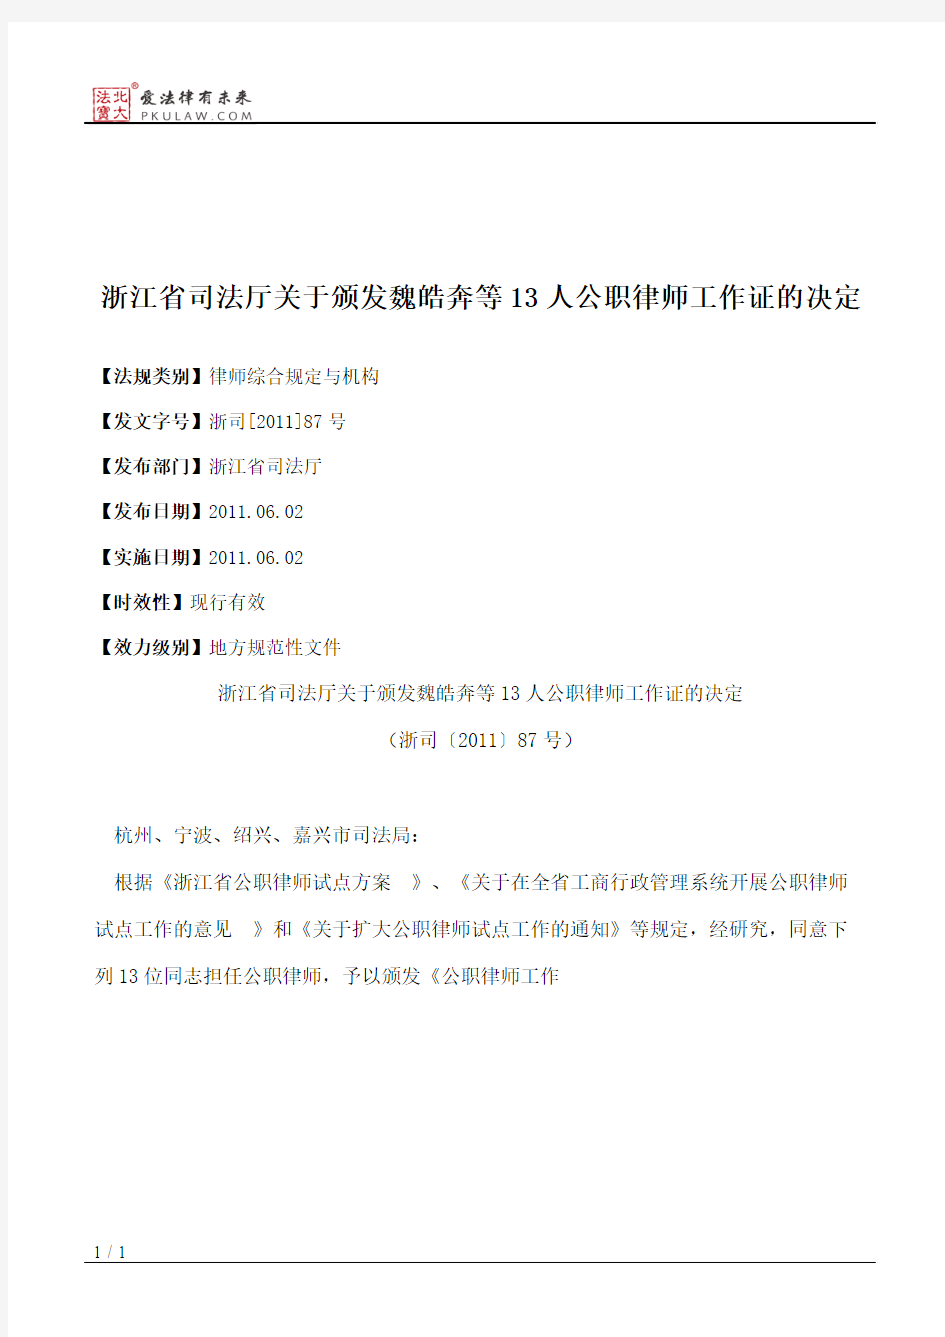 浙江省司法厅关于颁发魏皓奔等13人公职律师工作证的决定